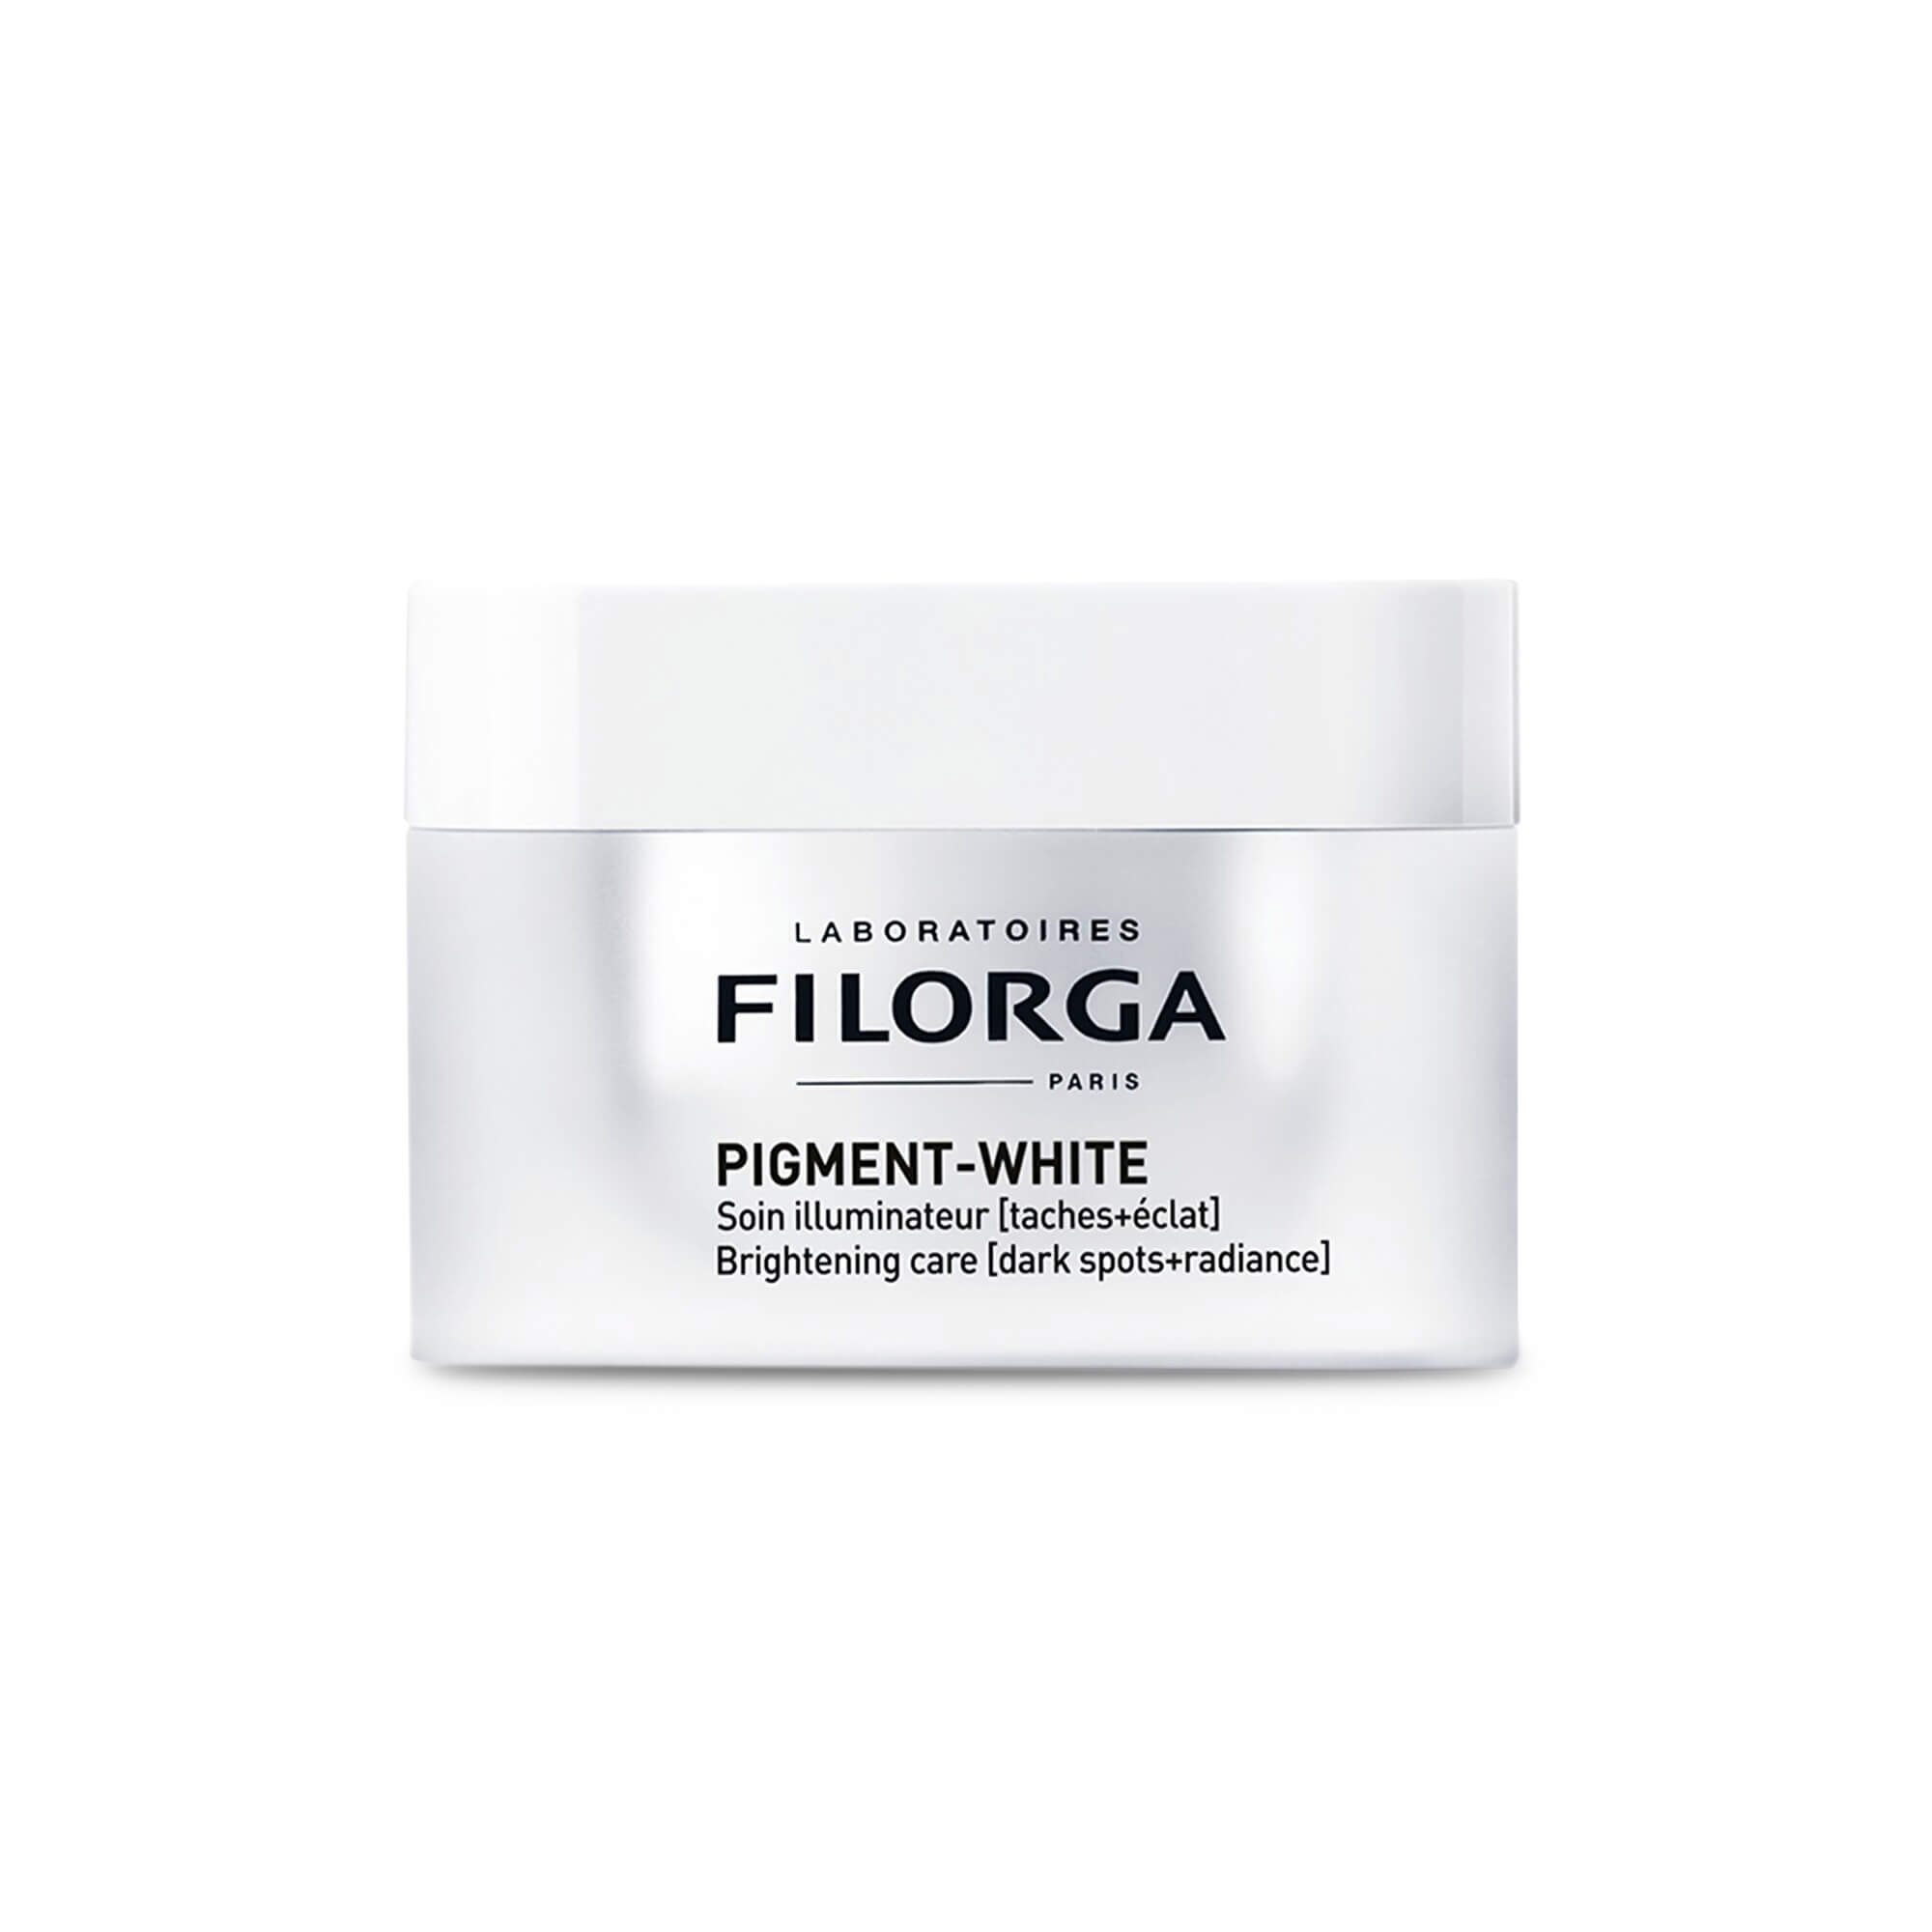 Pigment WHITE cream